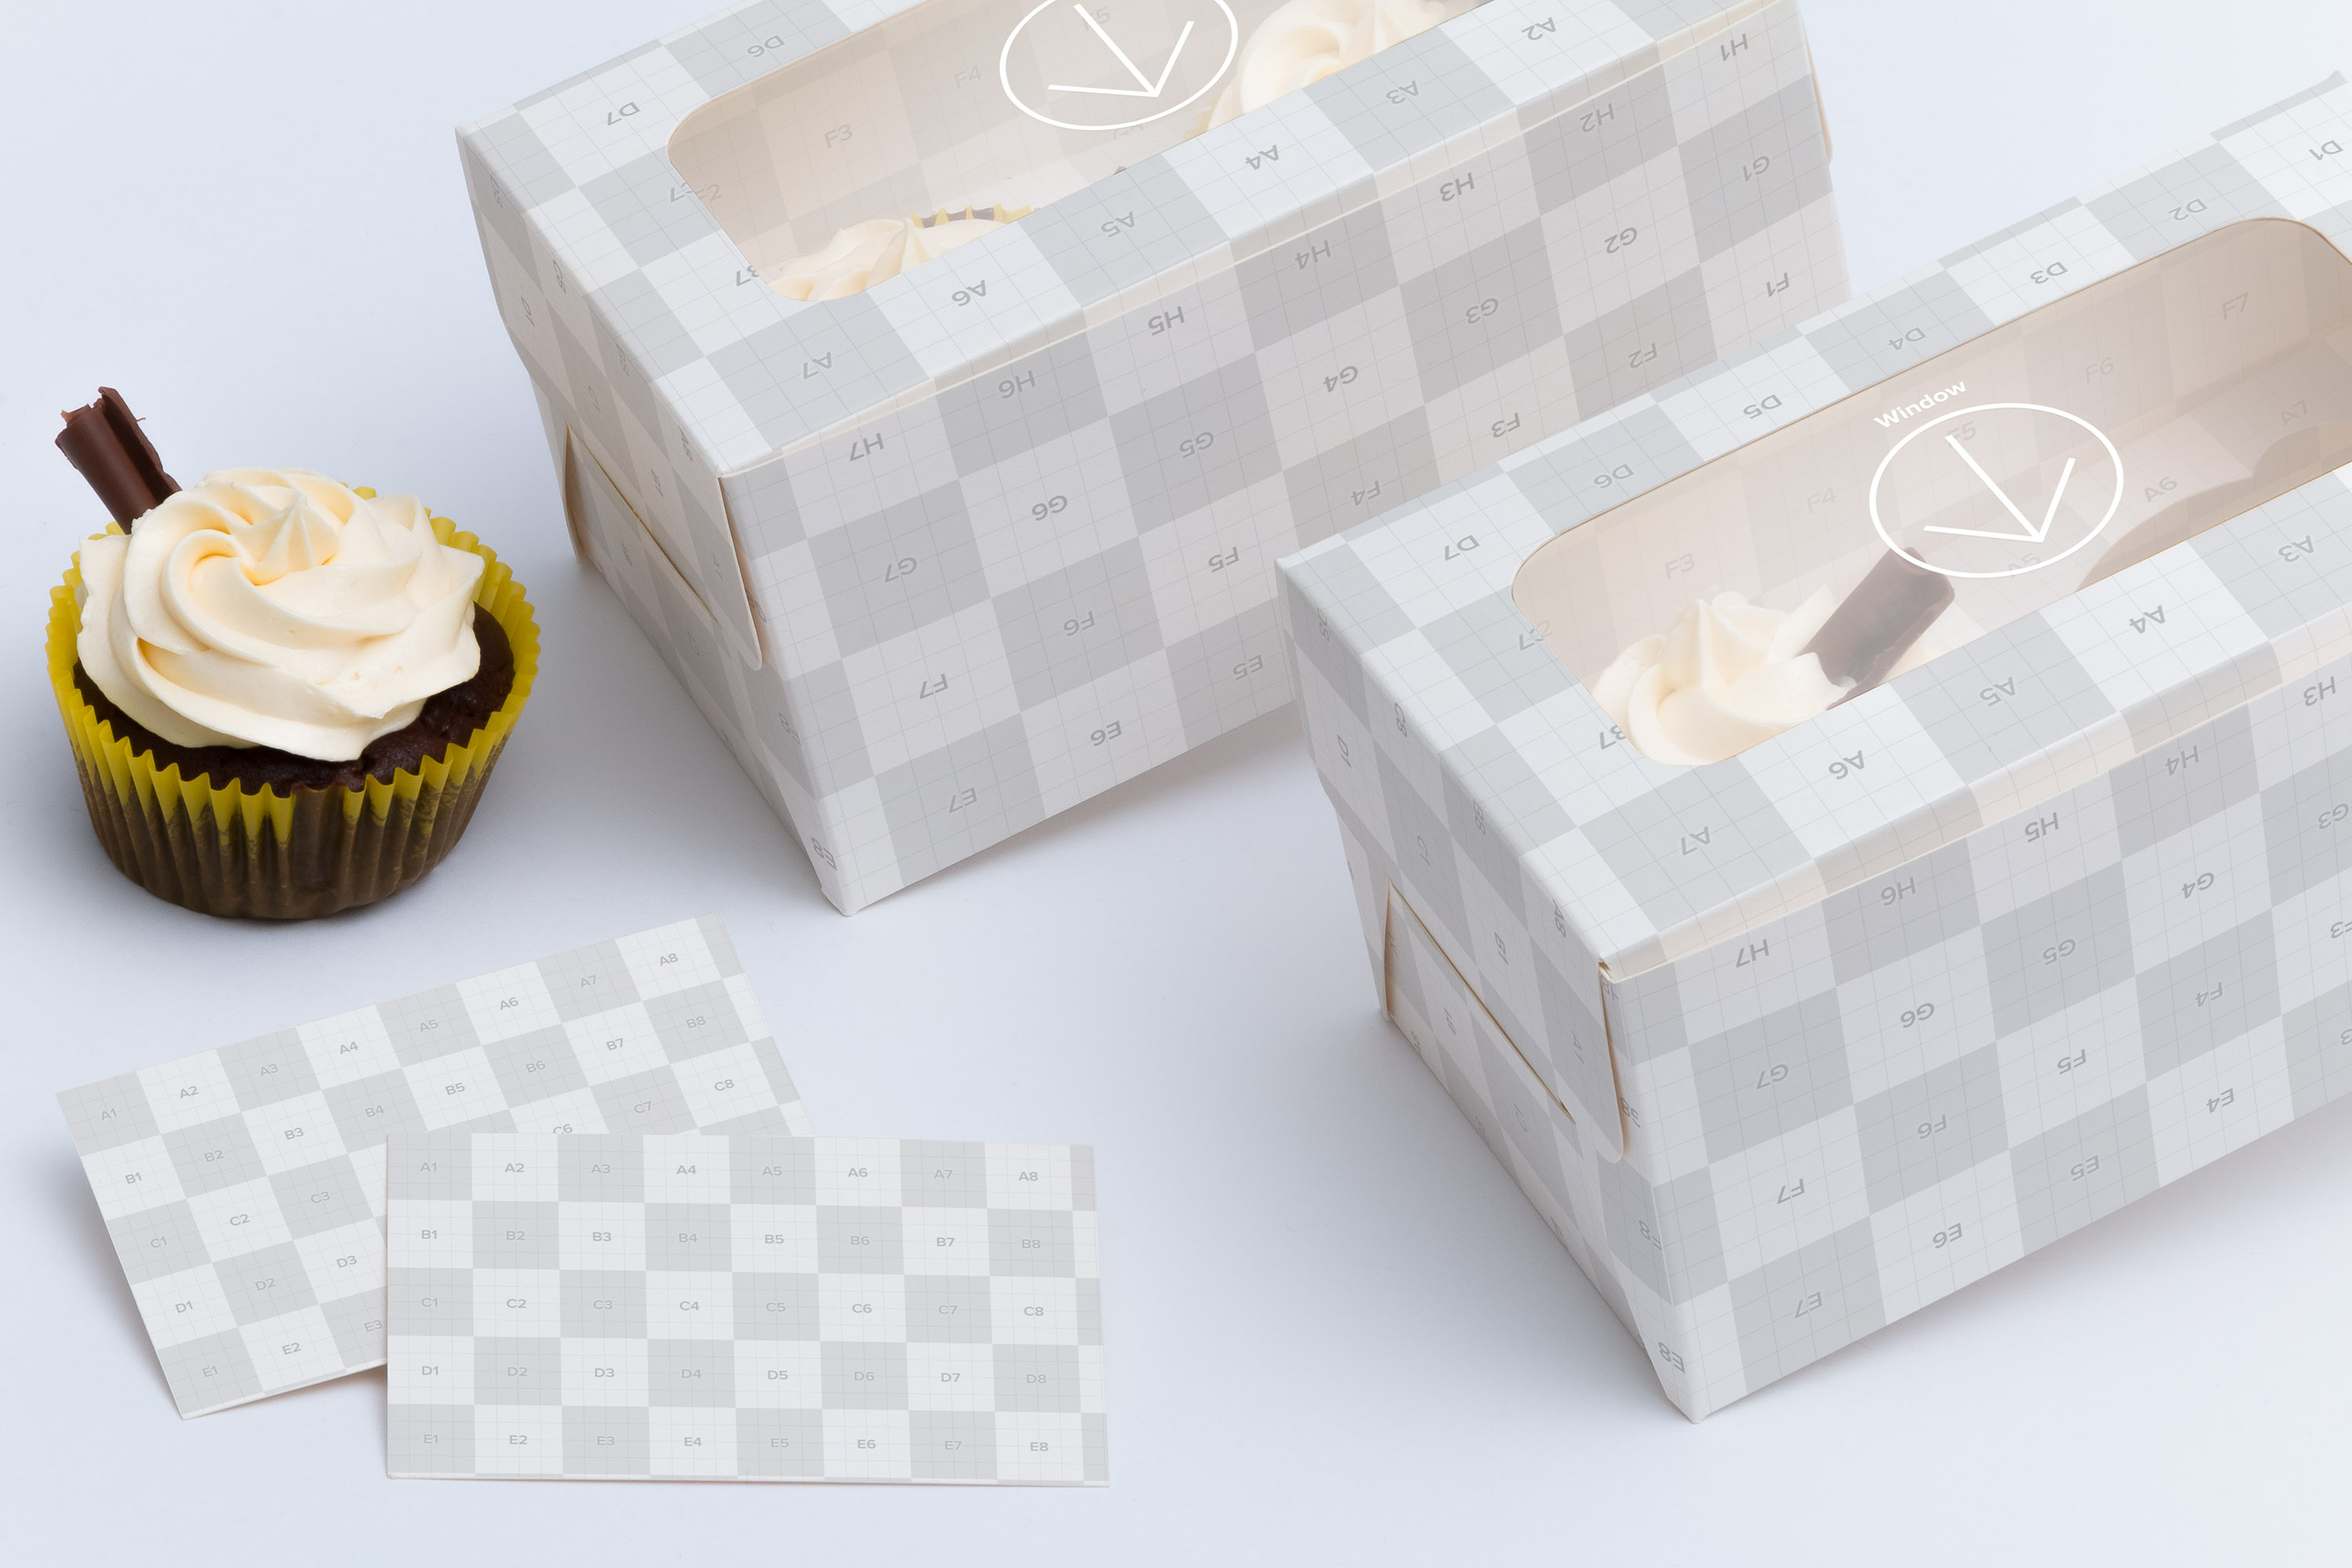 两只装纸杯蛋糕糕点包装盒设计样机04 Two Cupcake Box Mockup 04插图(2)